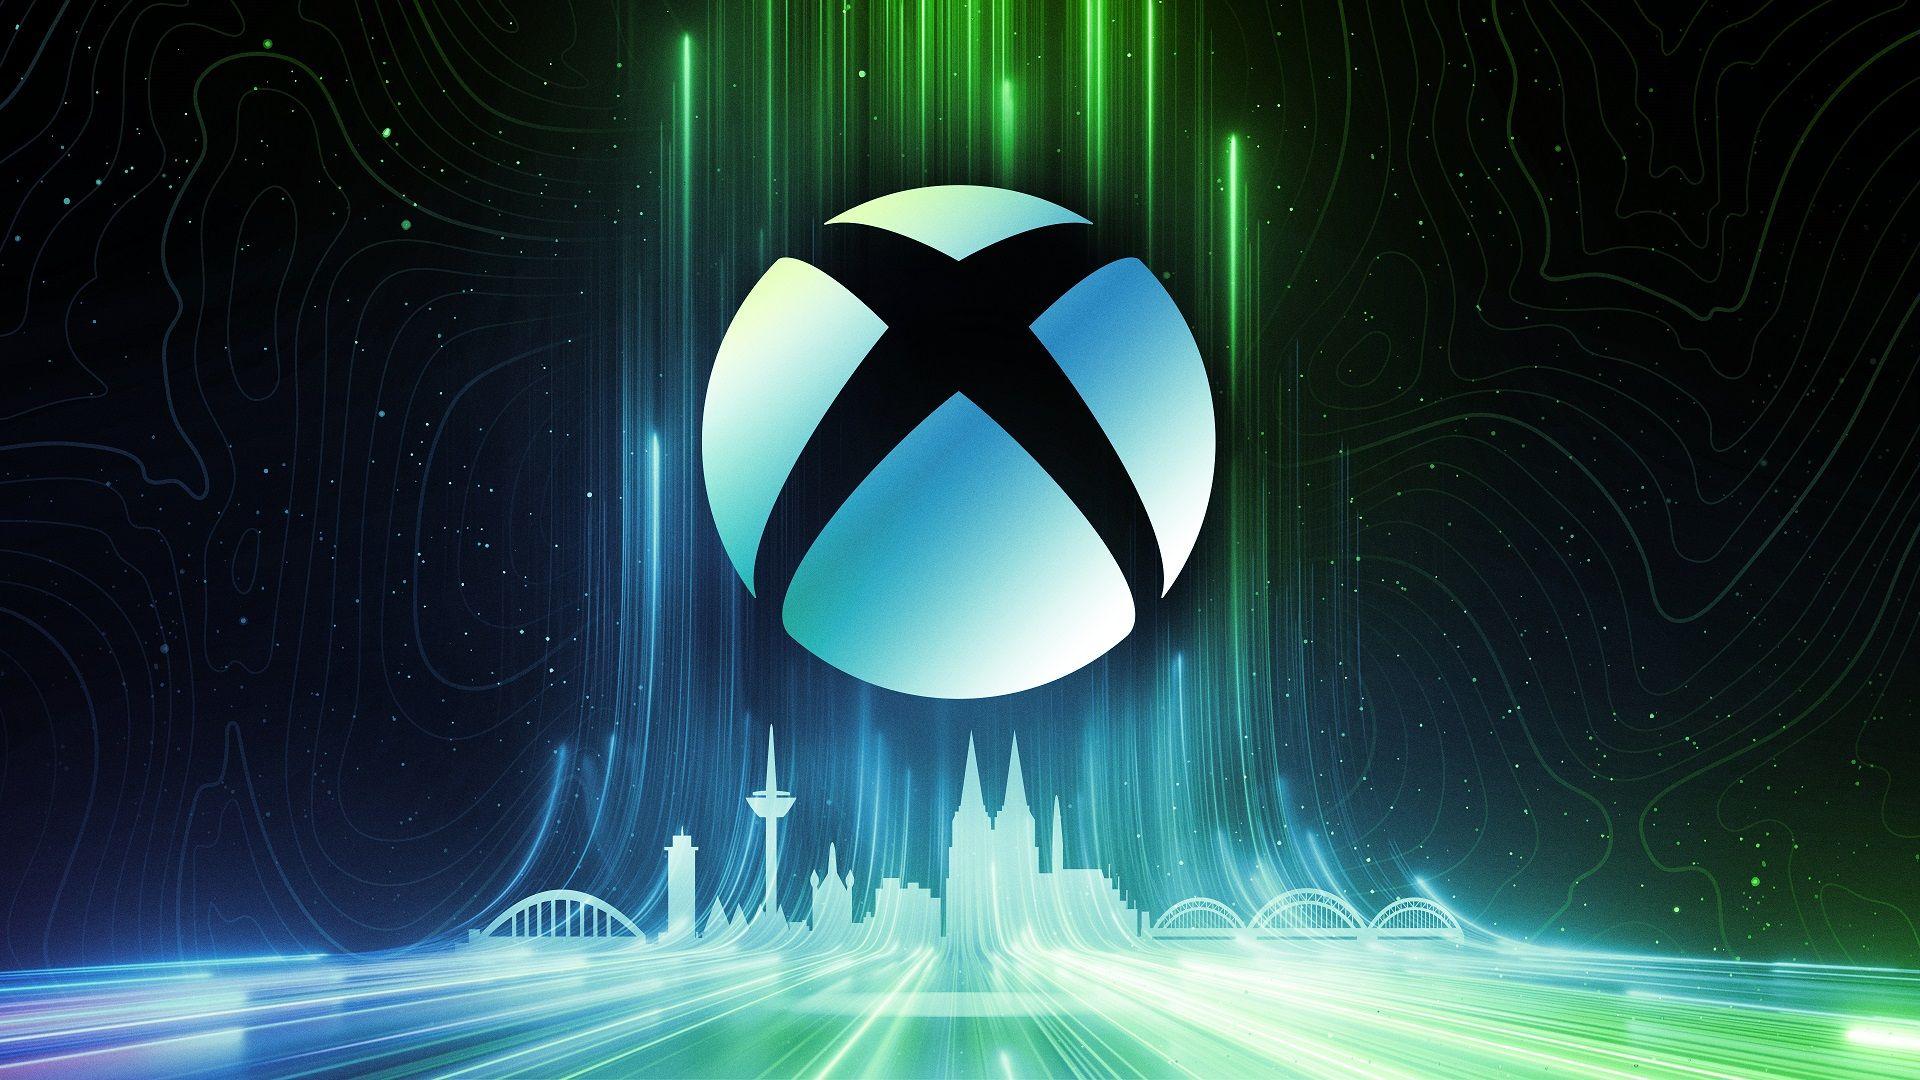 A Consola Portátil Xbox é um dispositivo da família Xbox que poderá ser anunciado muito em breve